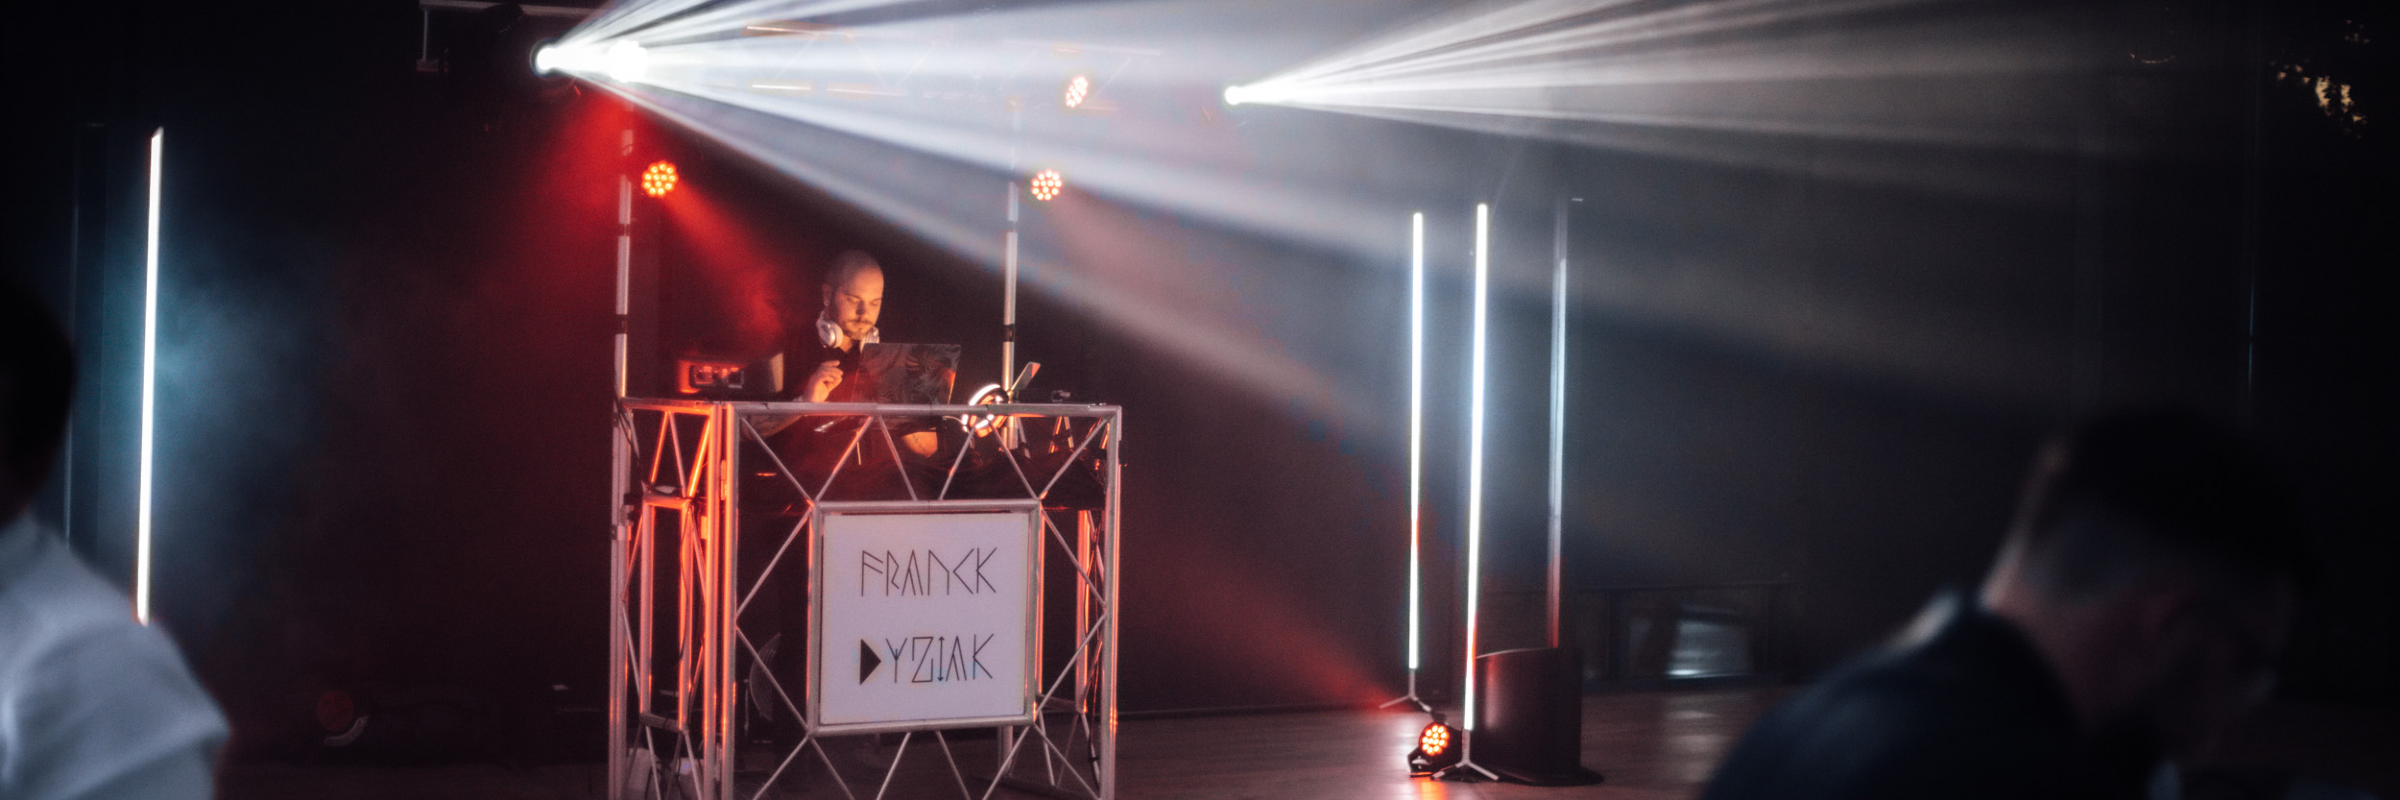 Franck Dyziak, DJ DJ en représentation à Loire Atlantique - photo de couverture n° 1